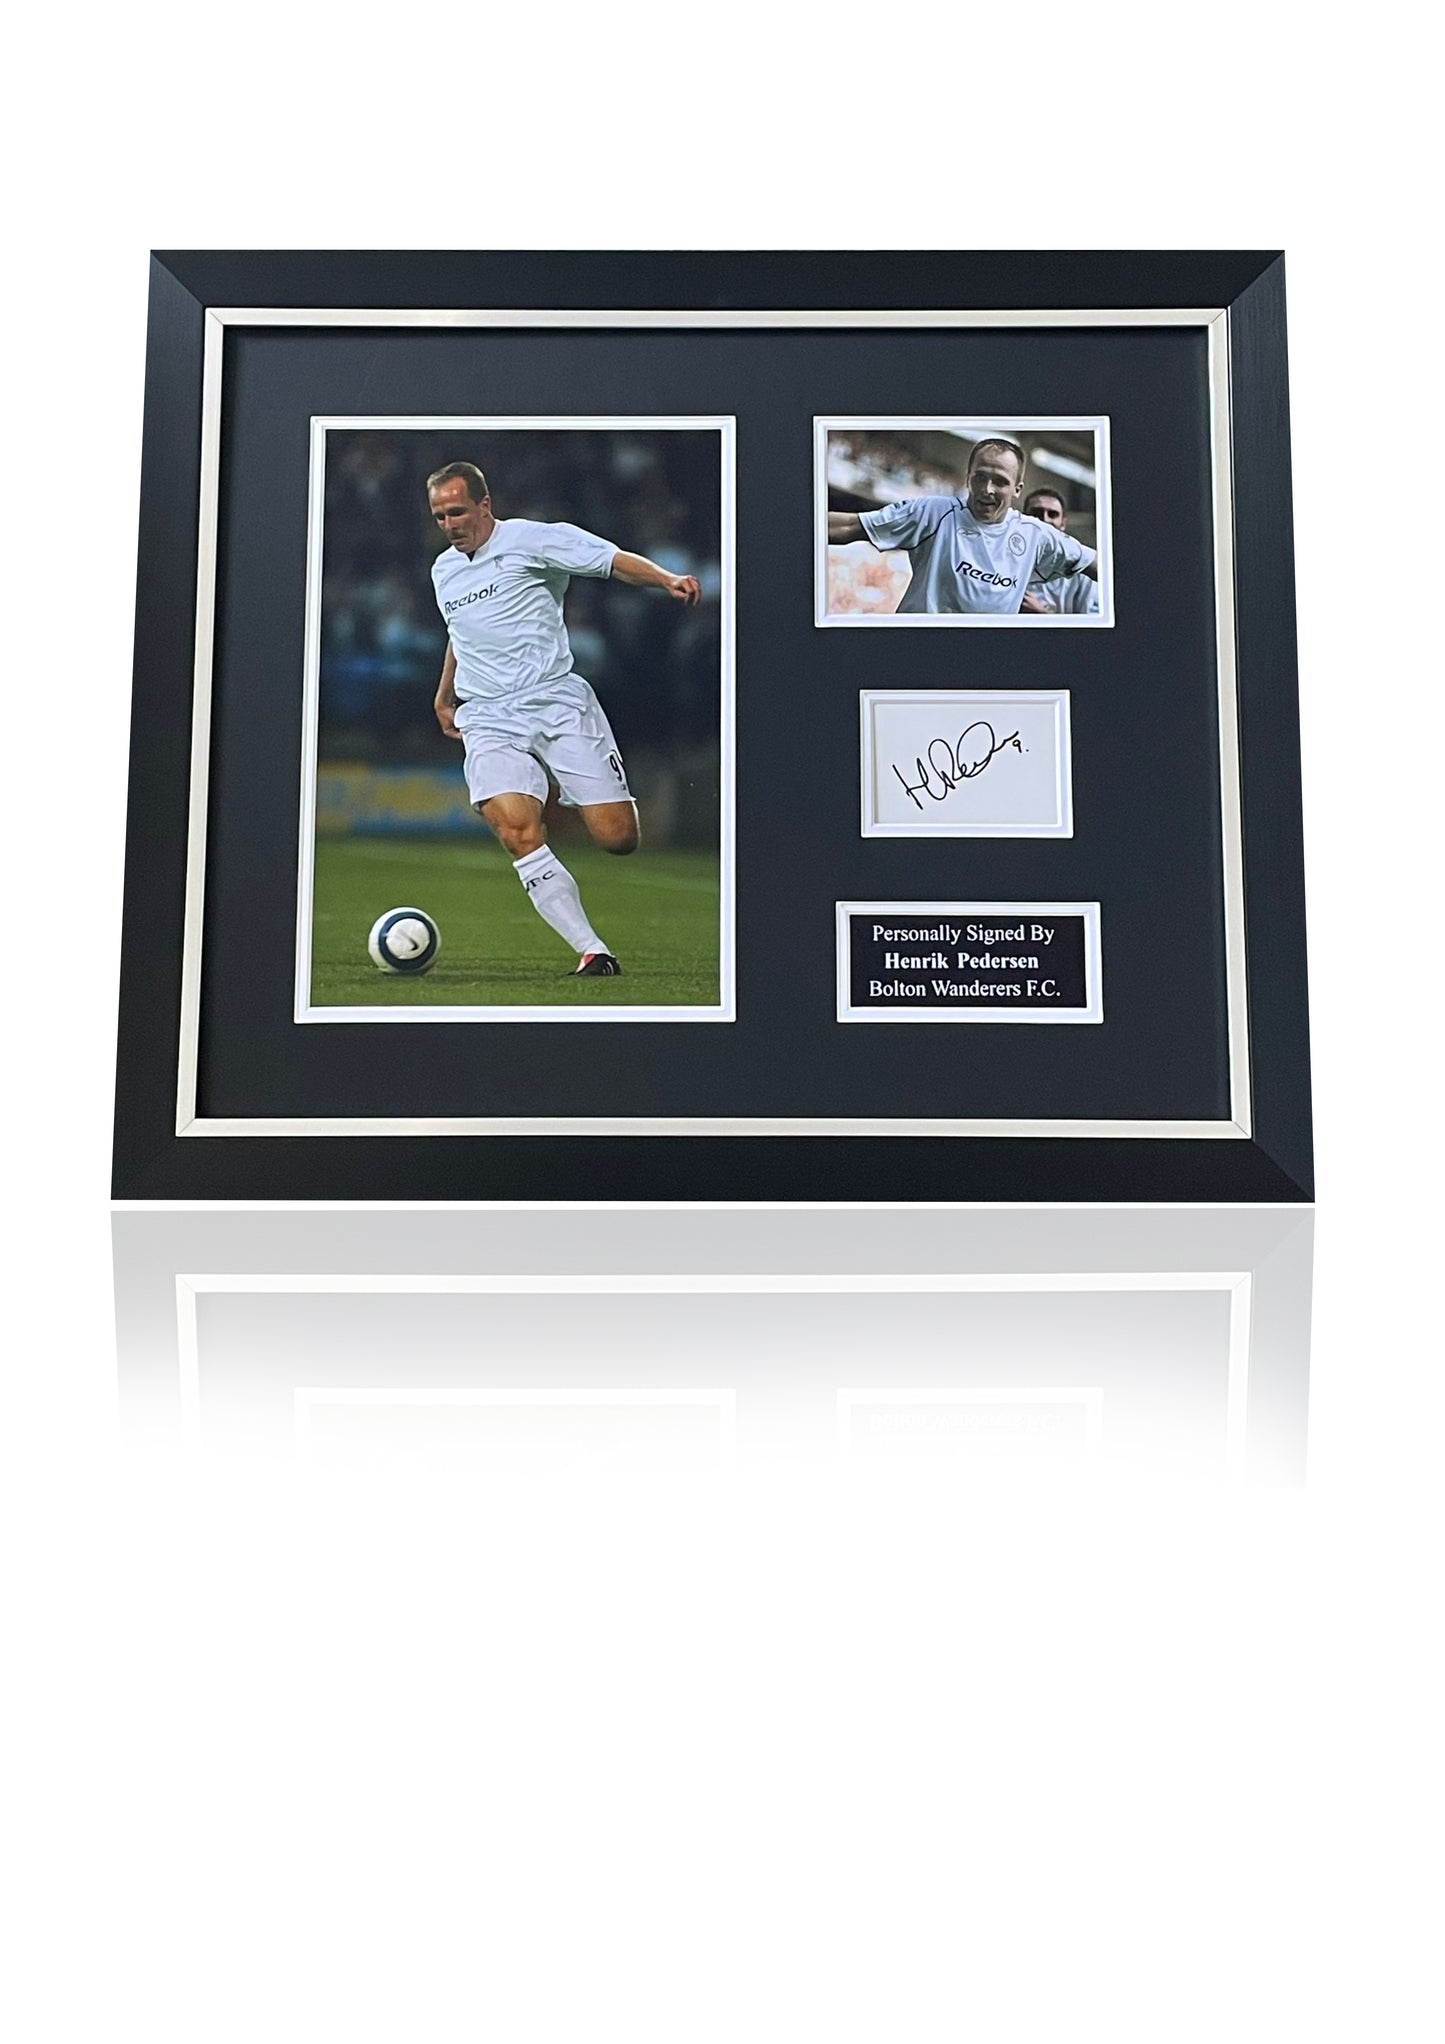 Henrik Pedersen Bolton Wanderers signed framed photo card montage